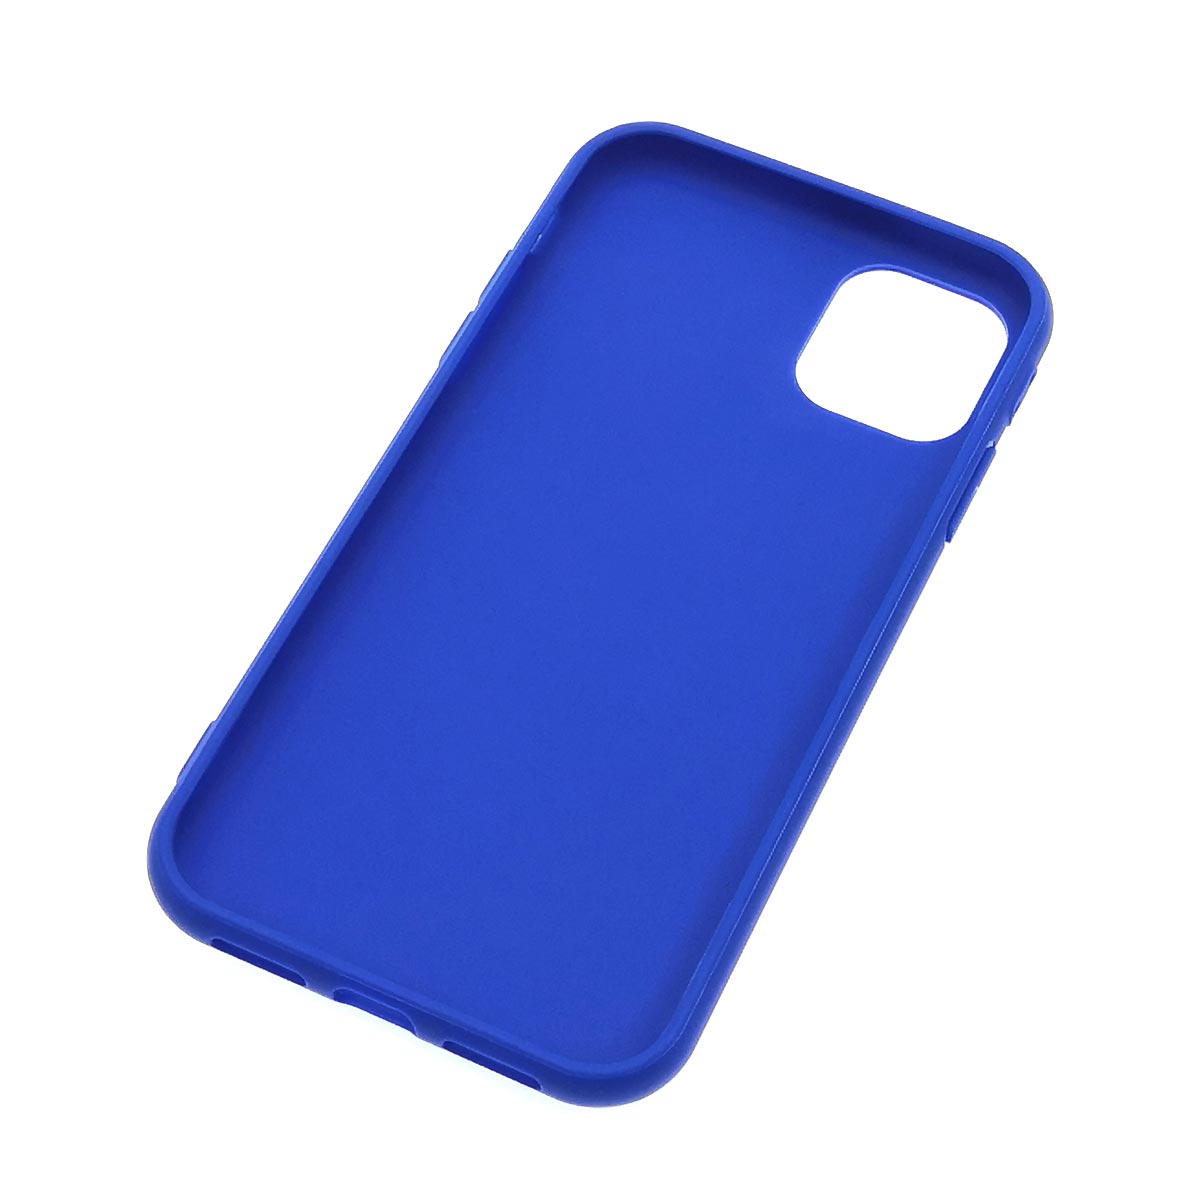 Чехол накладка для APPLE iPhone 11, силикон, матовый, цвет синий